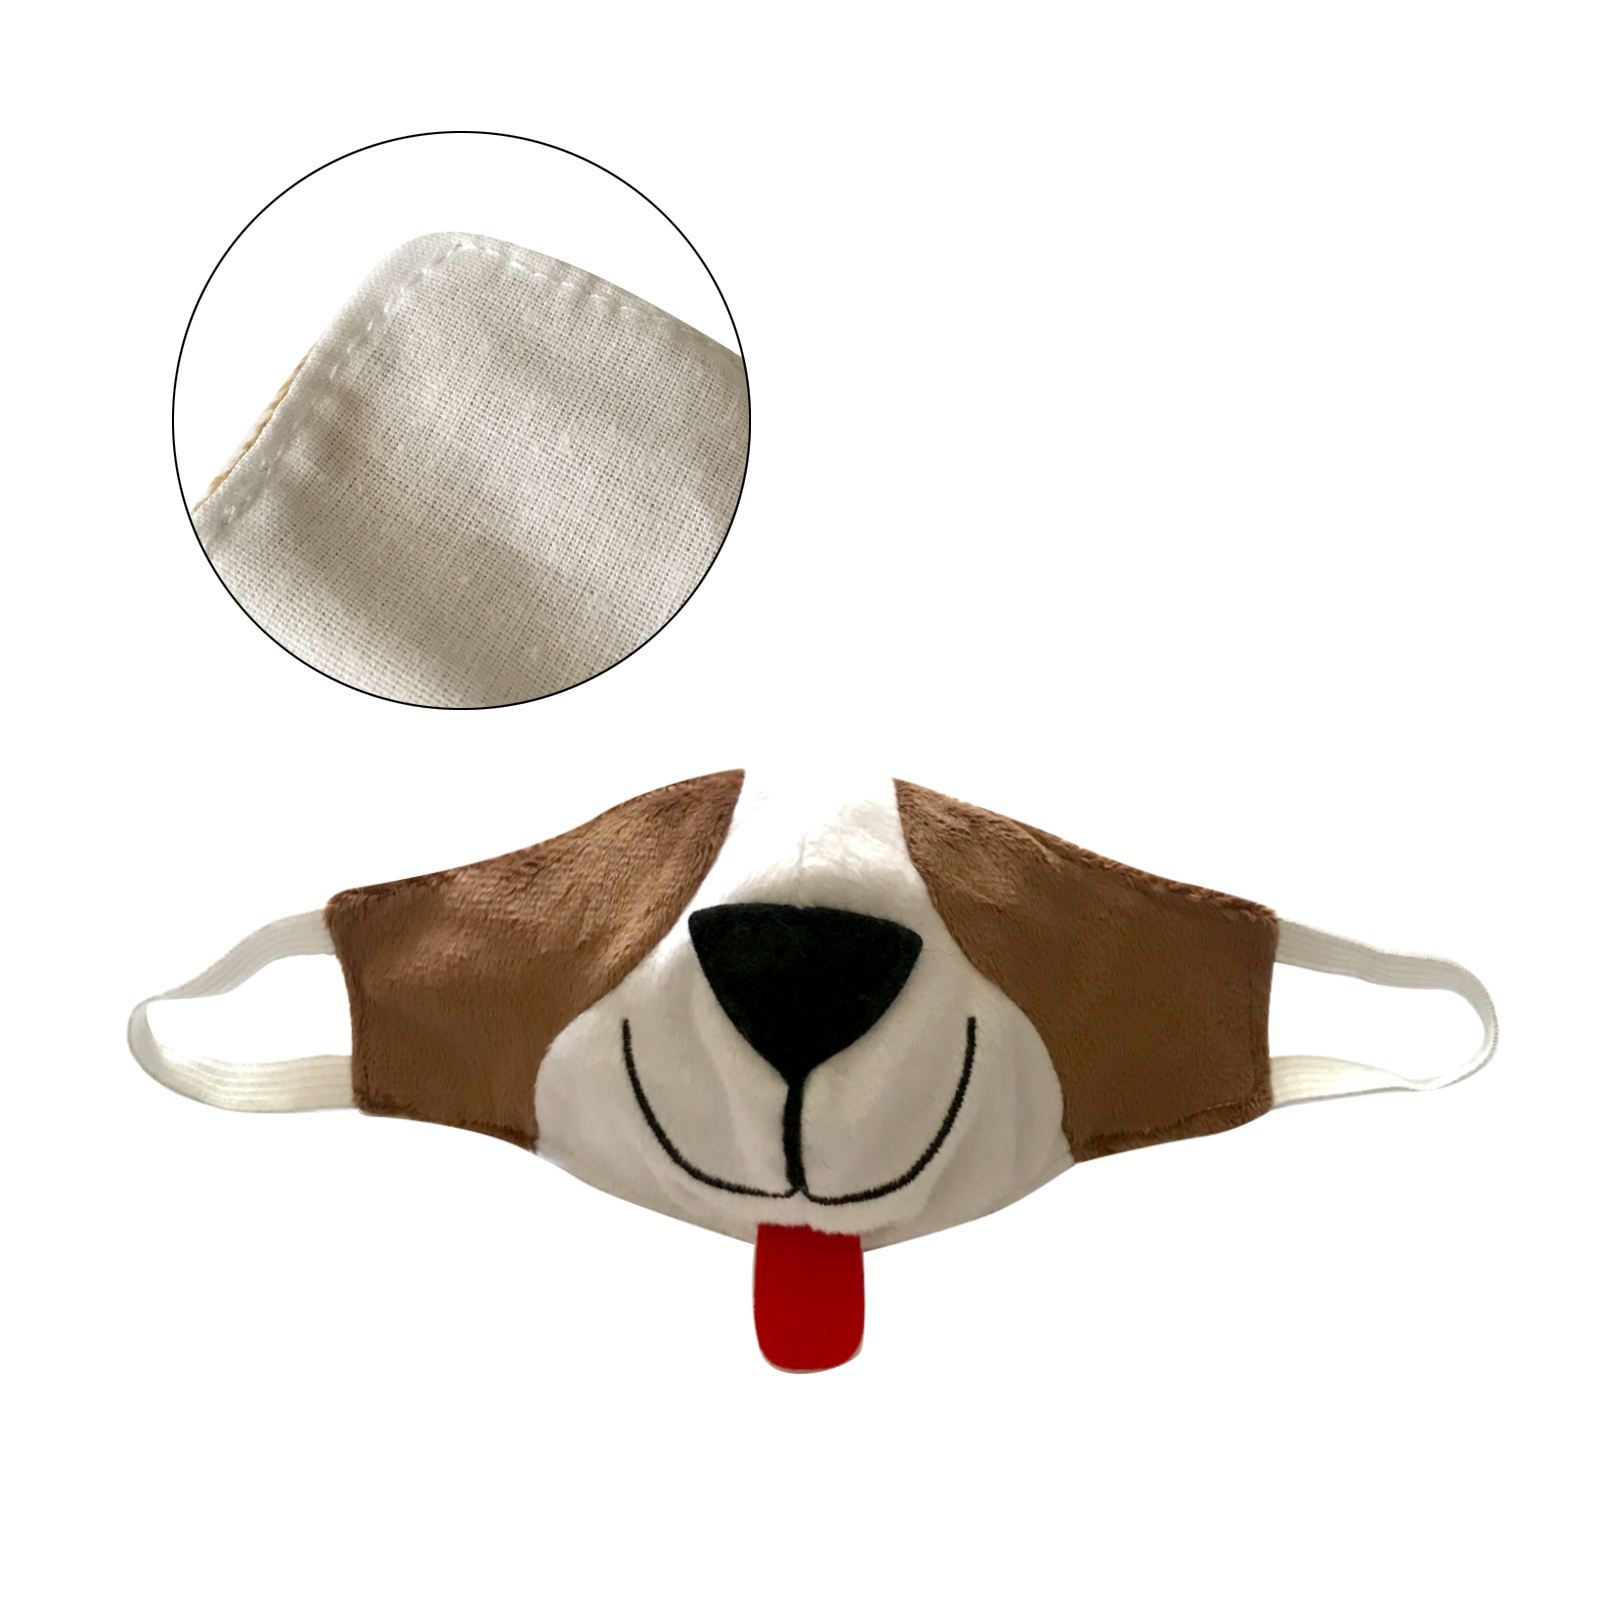 ماسک تزیینی مدل گربه و سگ مجموعه 2 عددی -  - 7